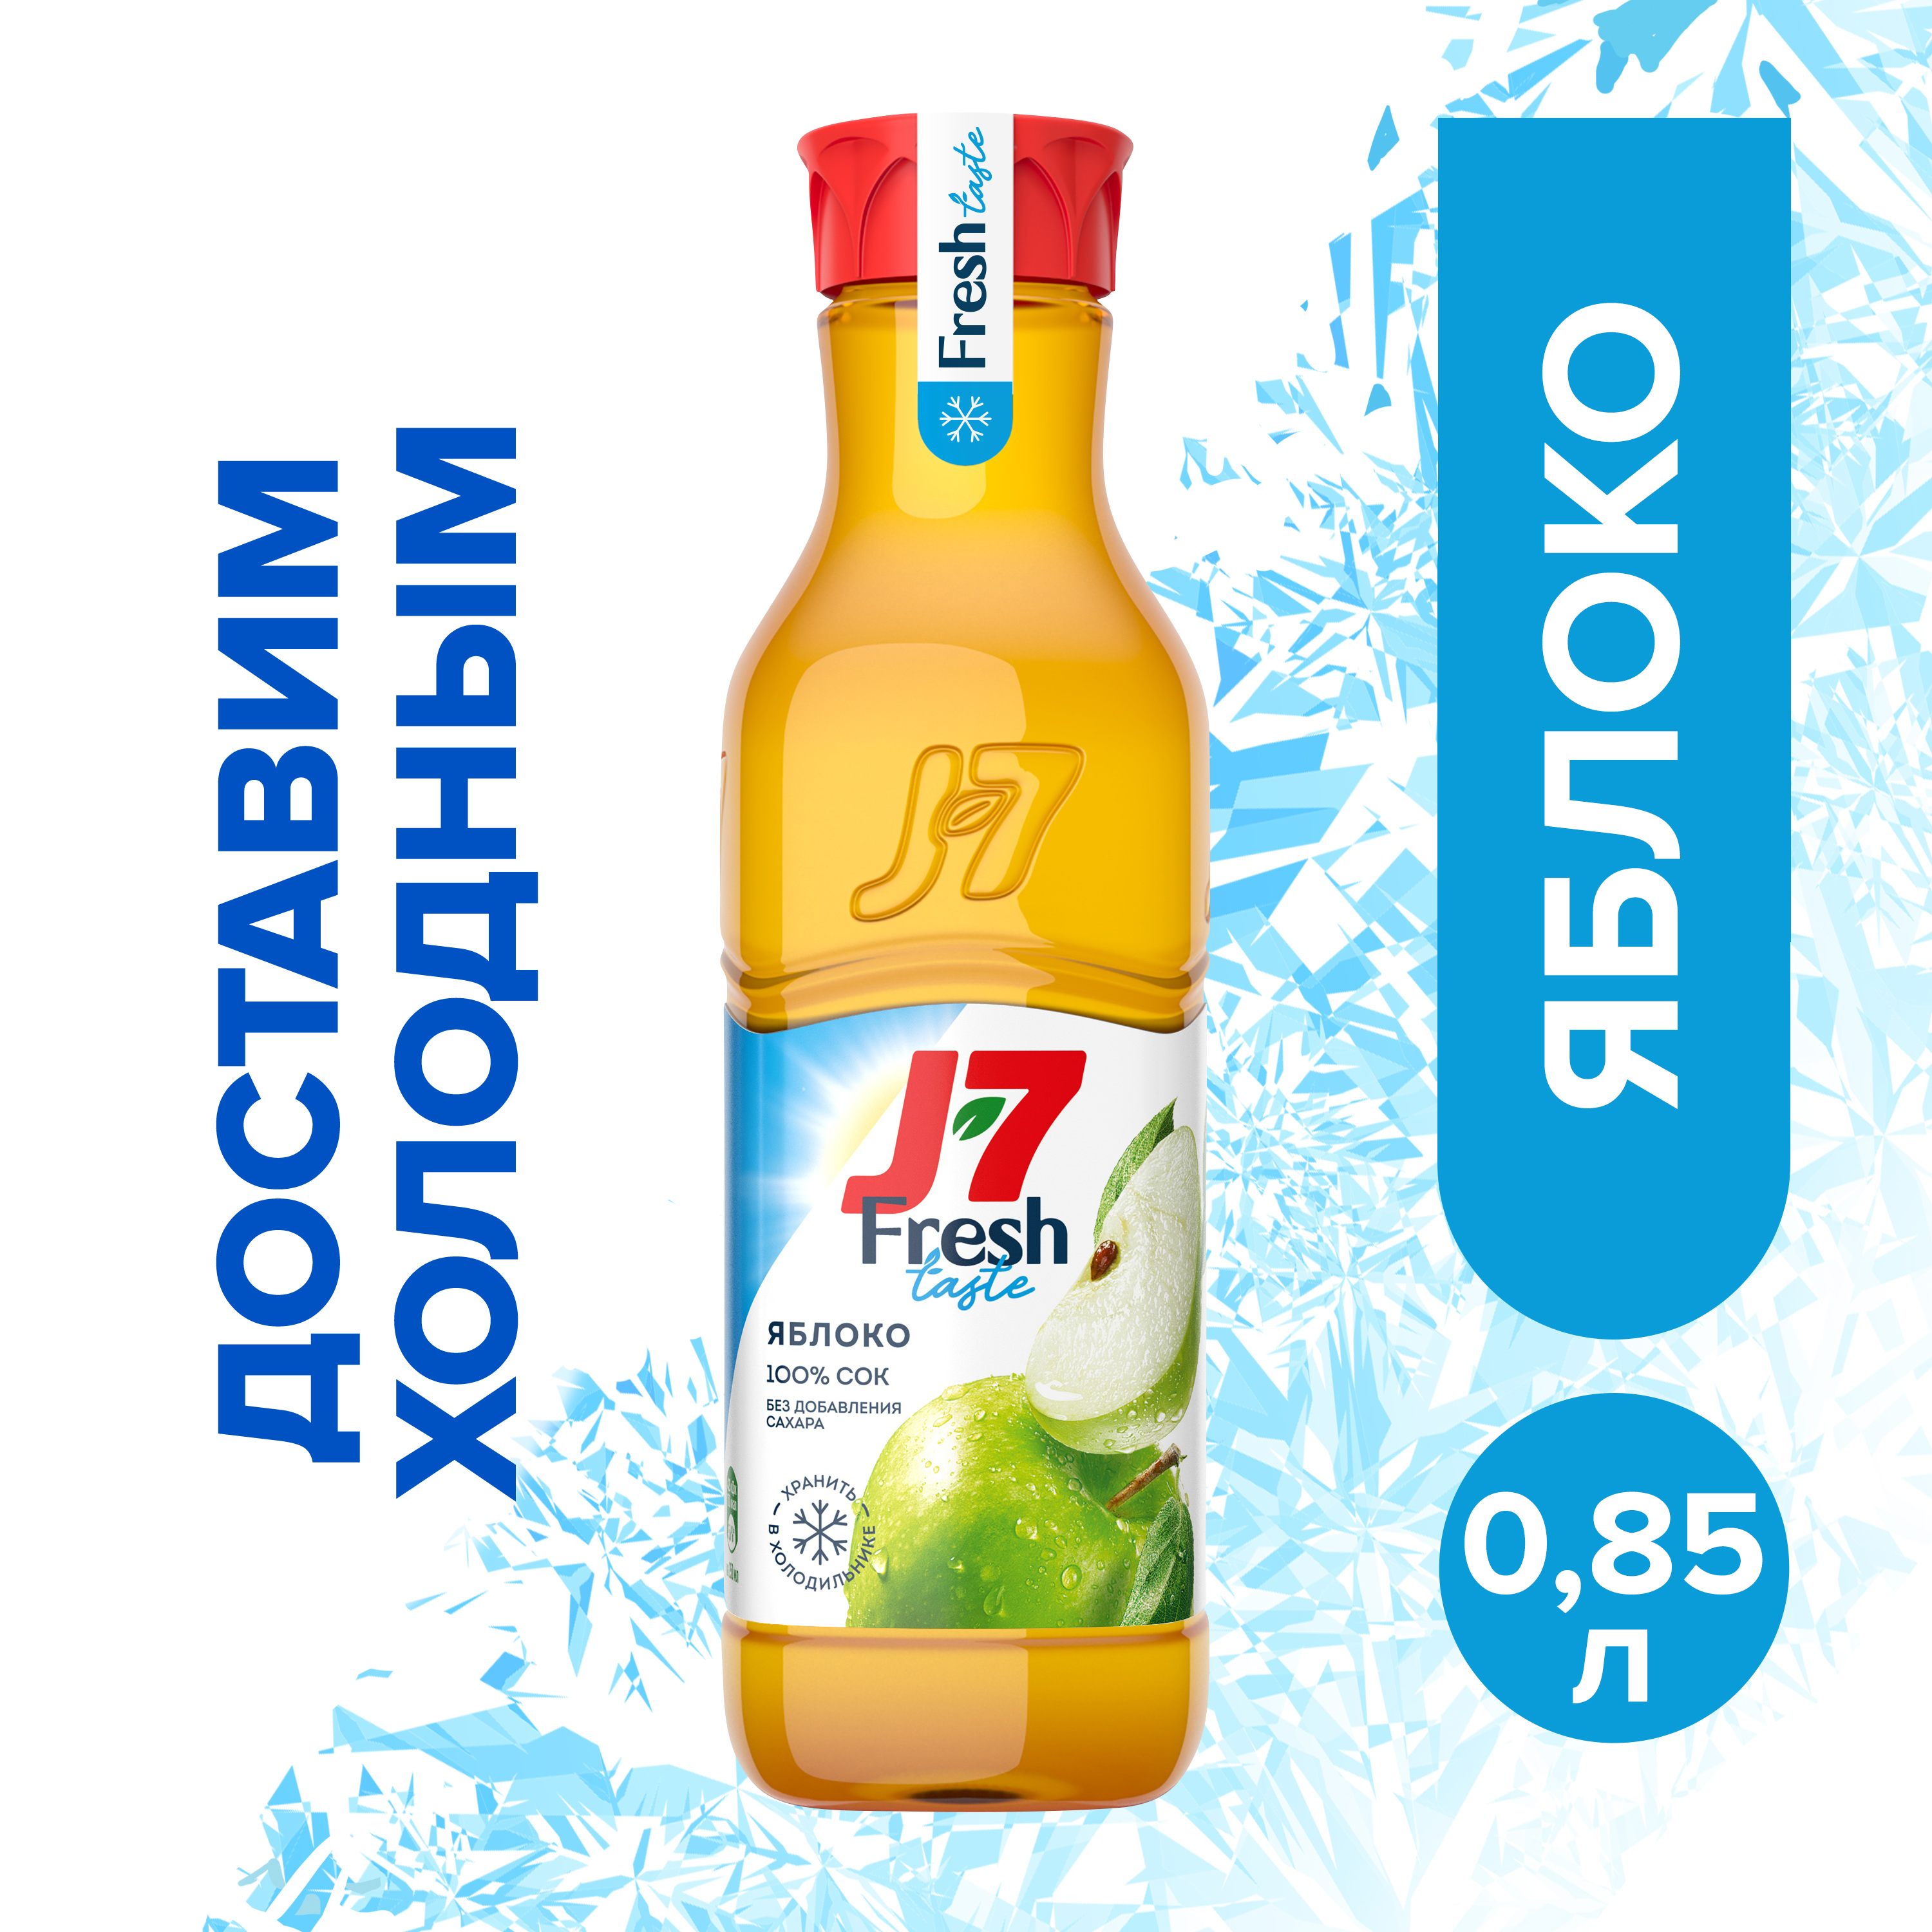 J7 fresh. J7 сок Фреш. J7 Fresh 0.85 л. J7 охлажденный сок. Сок апельсиновый j7 Fresh.